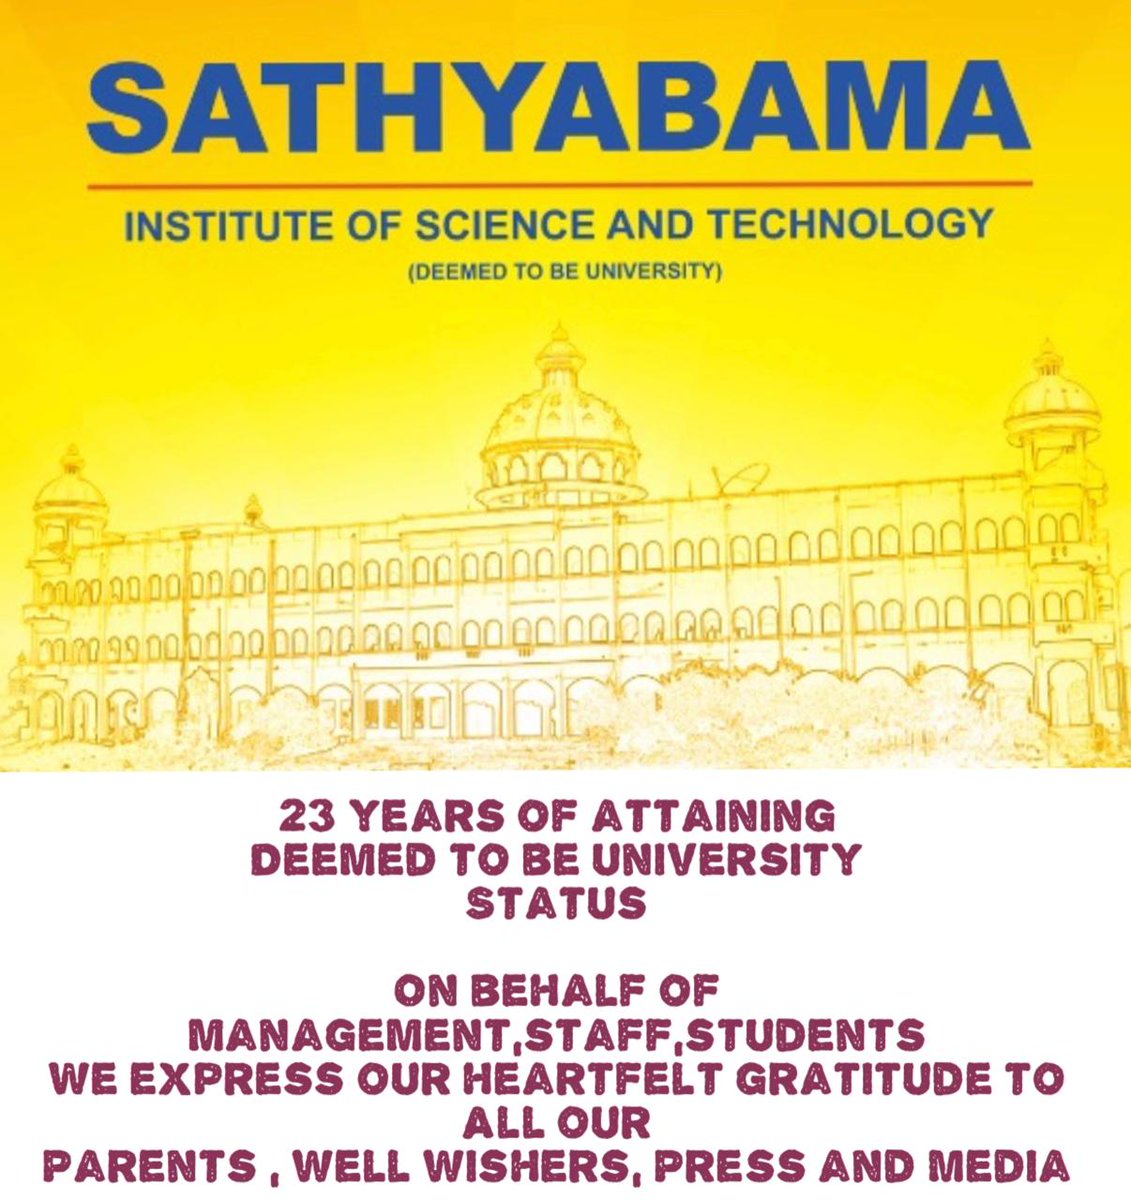 #sist #sathyabamauniversity #sathyabama #deemeduniversity